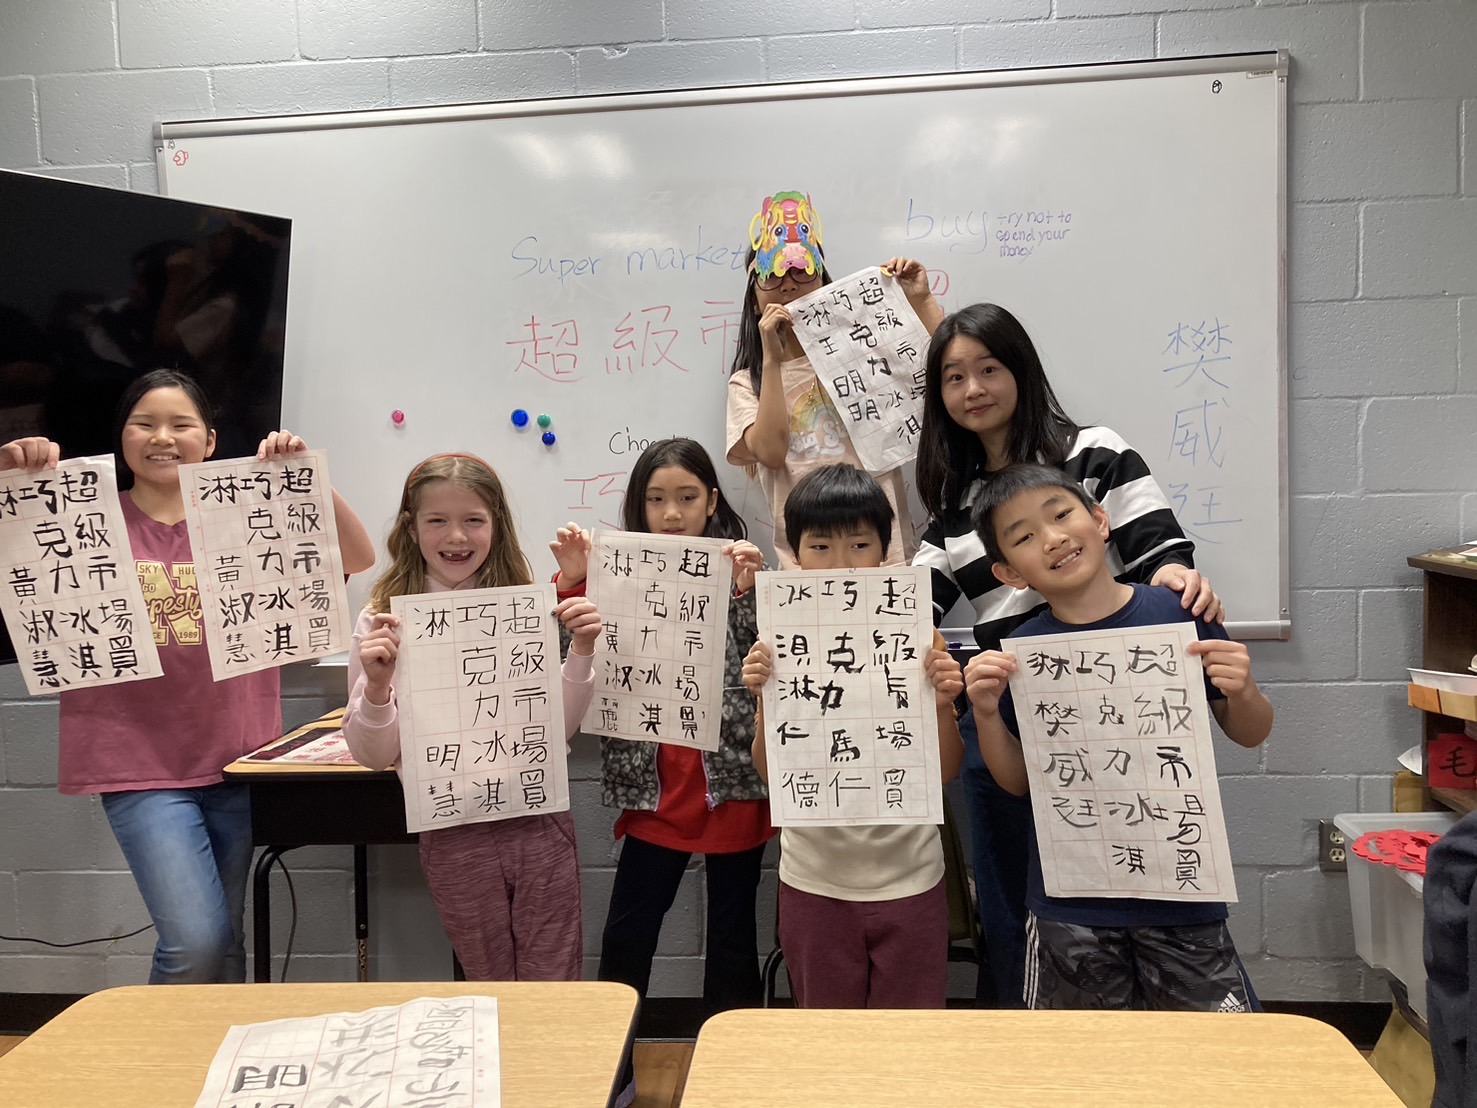 老師帶領學生一同參與書法比賽，認識漢字之美